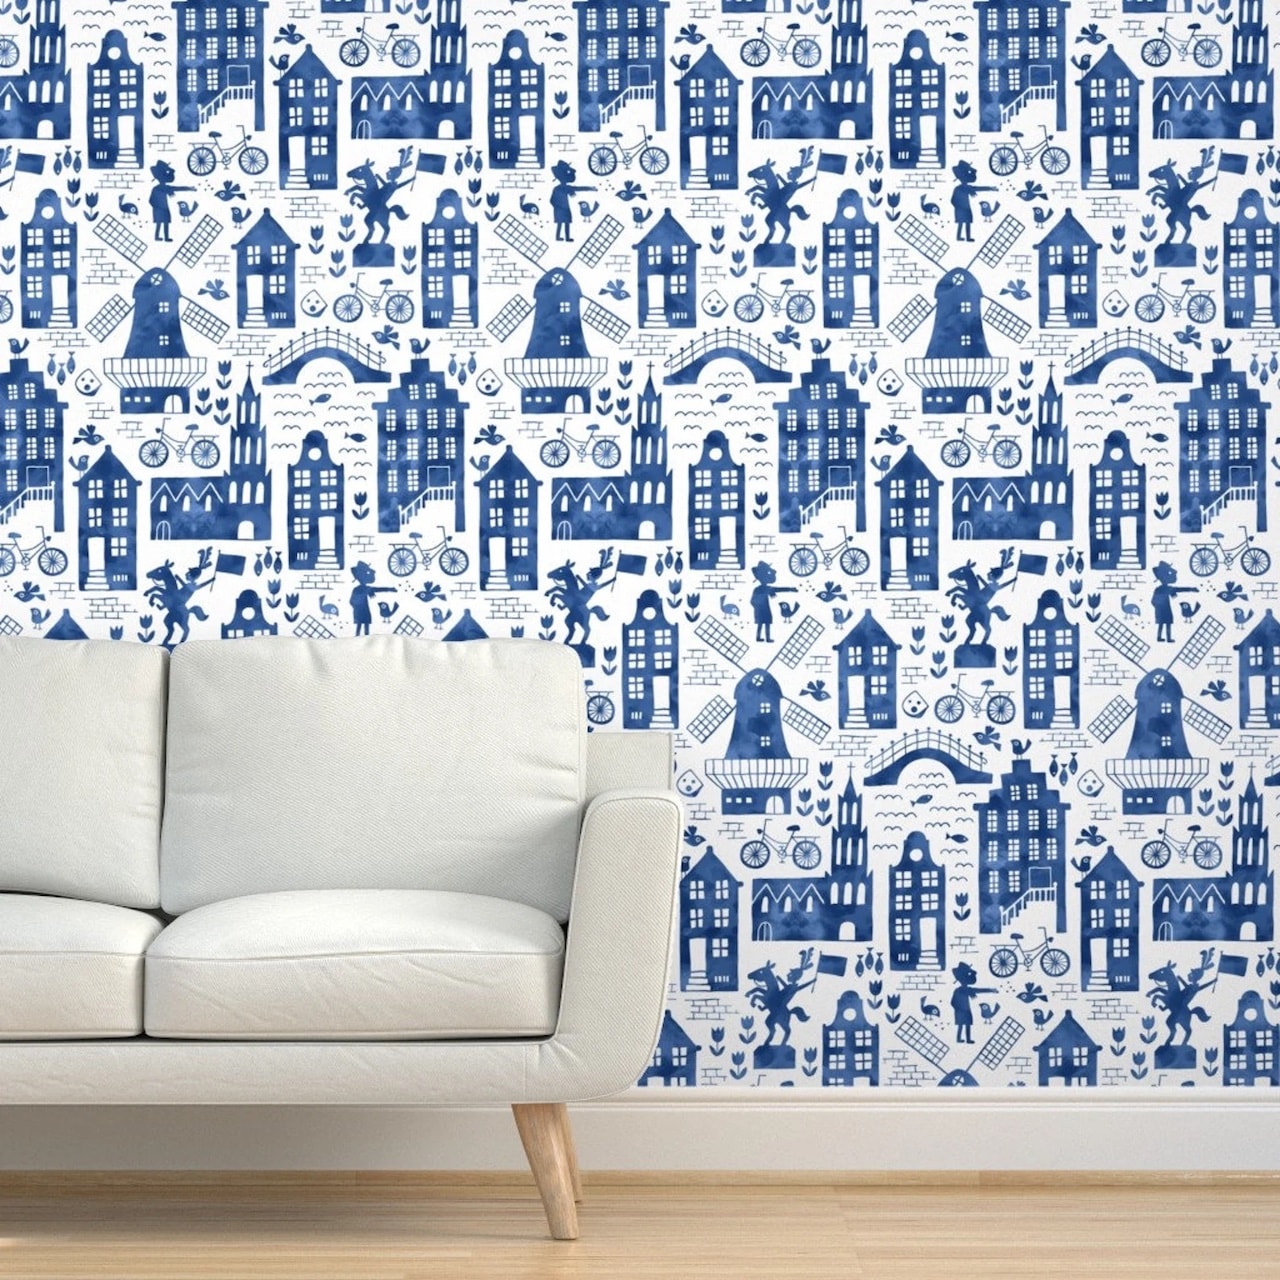 Google Offices Decor Design Dutch Holland Blue Wallpaper